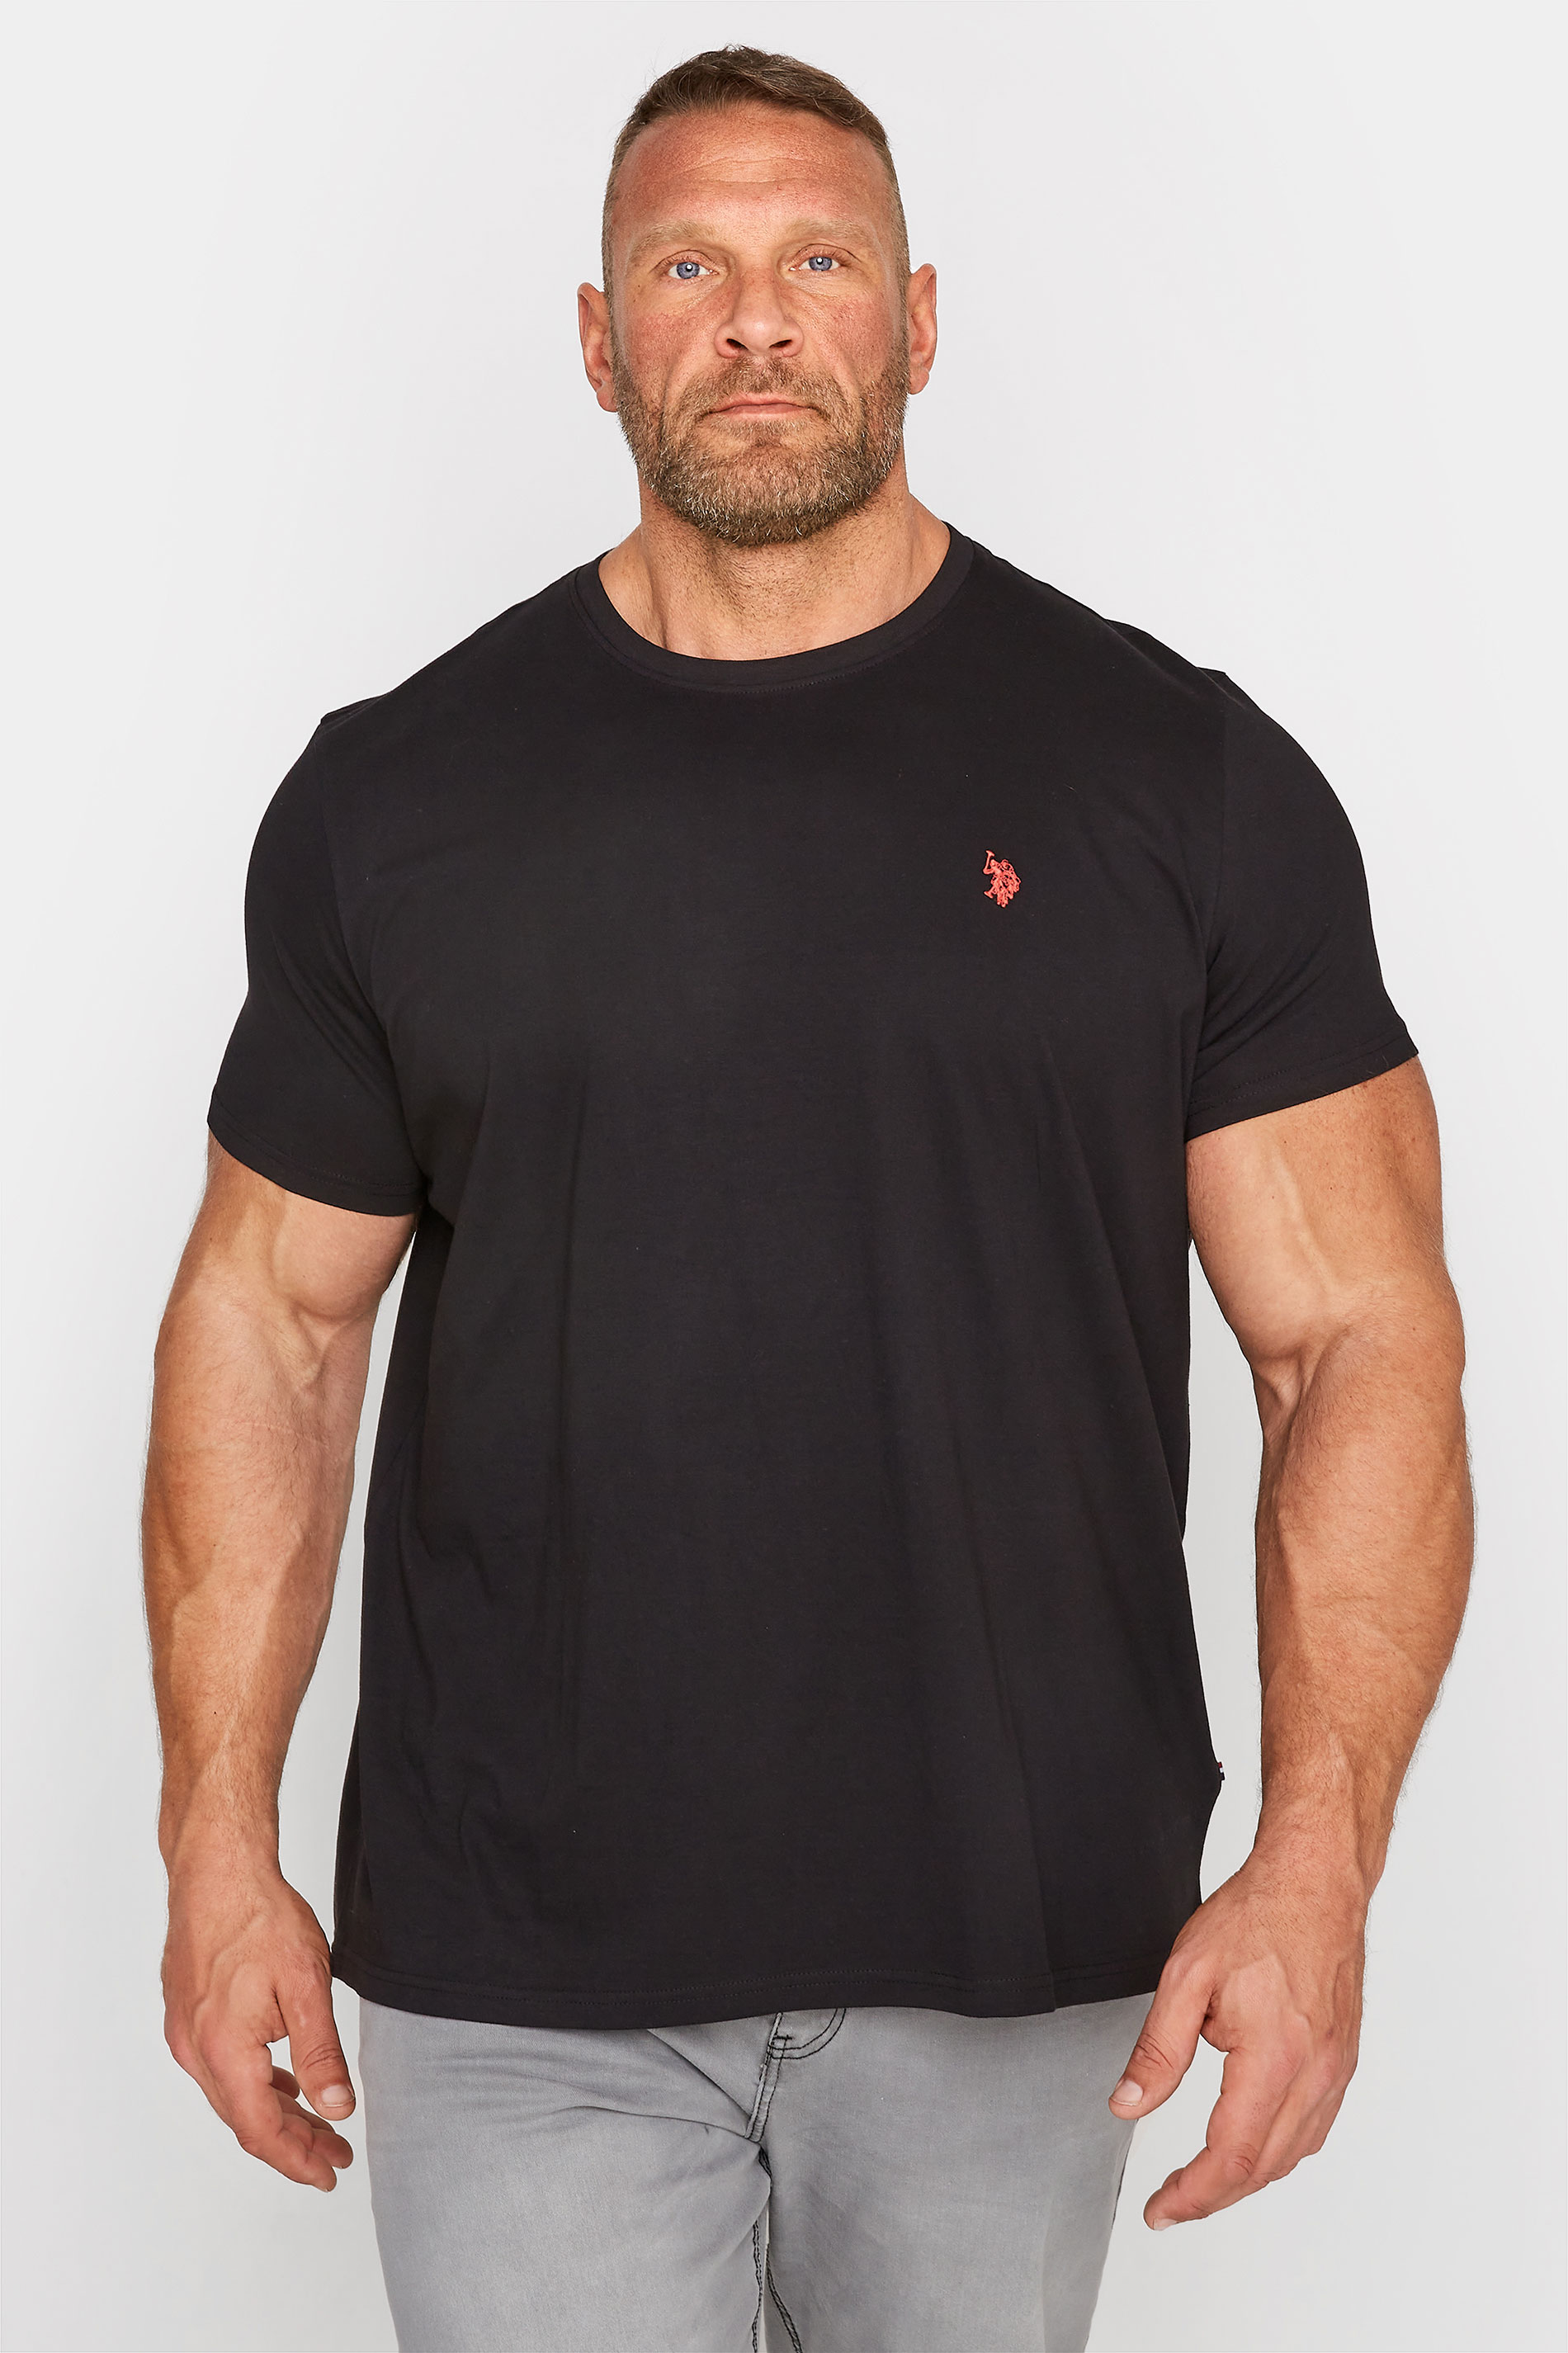 U.S. POLO ASSN. Black Core T-Shirt | BadRhino 1